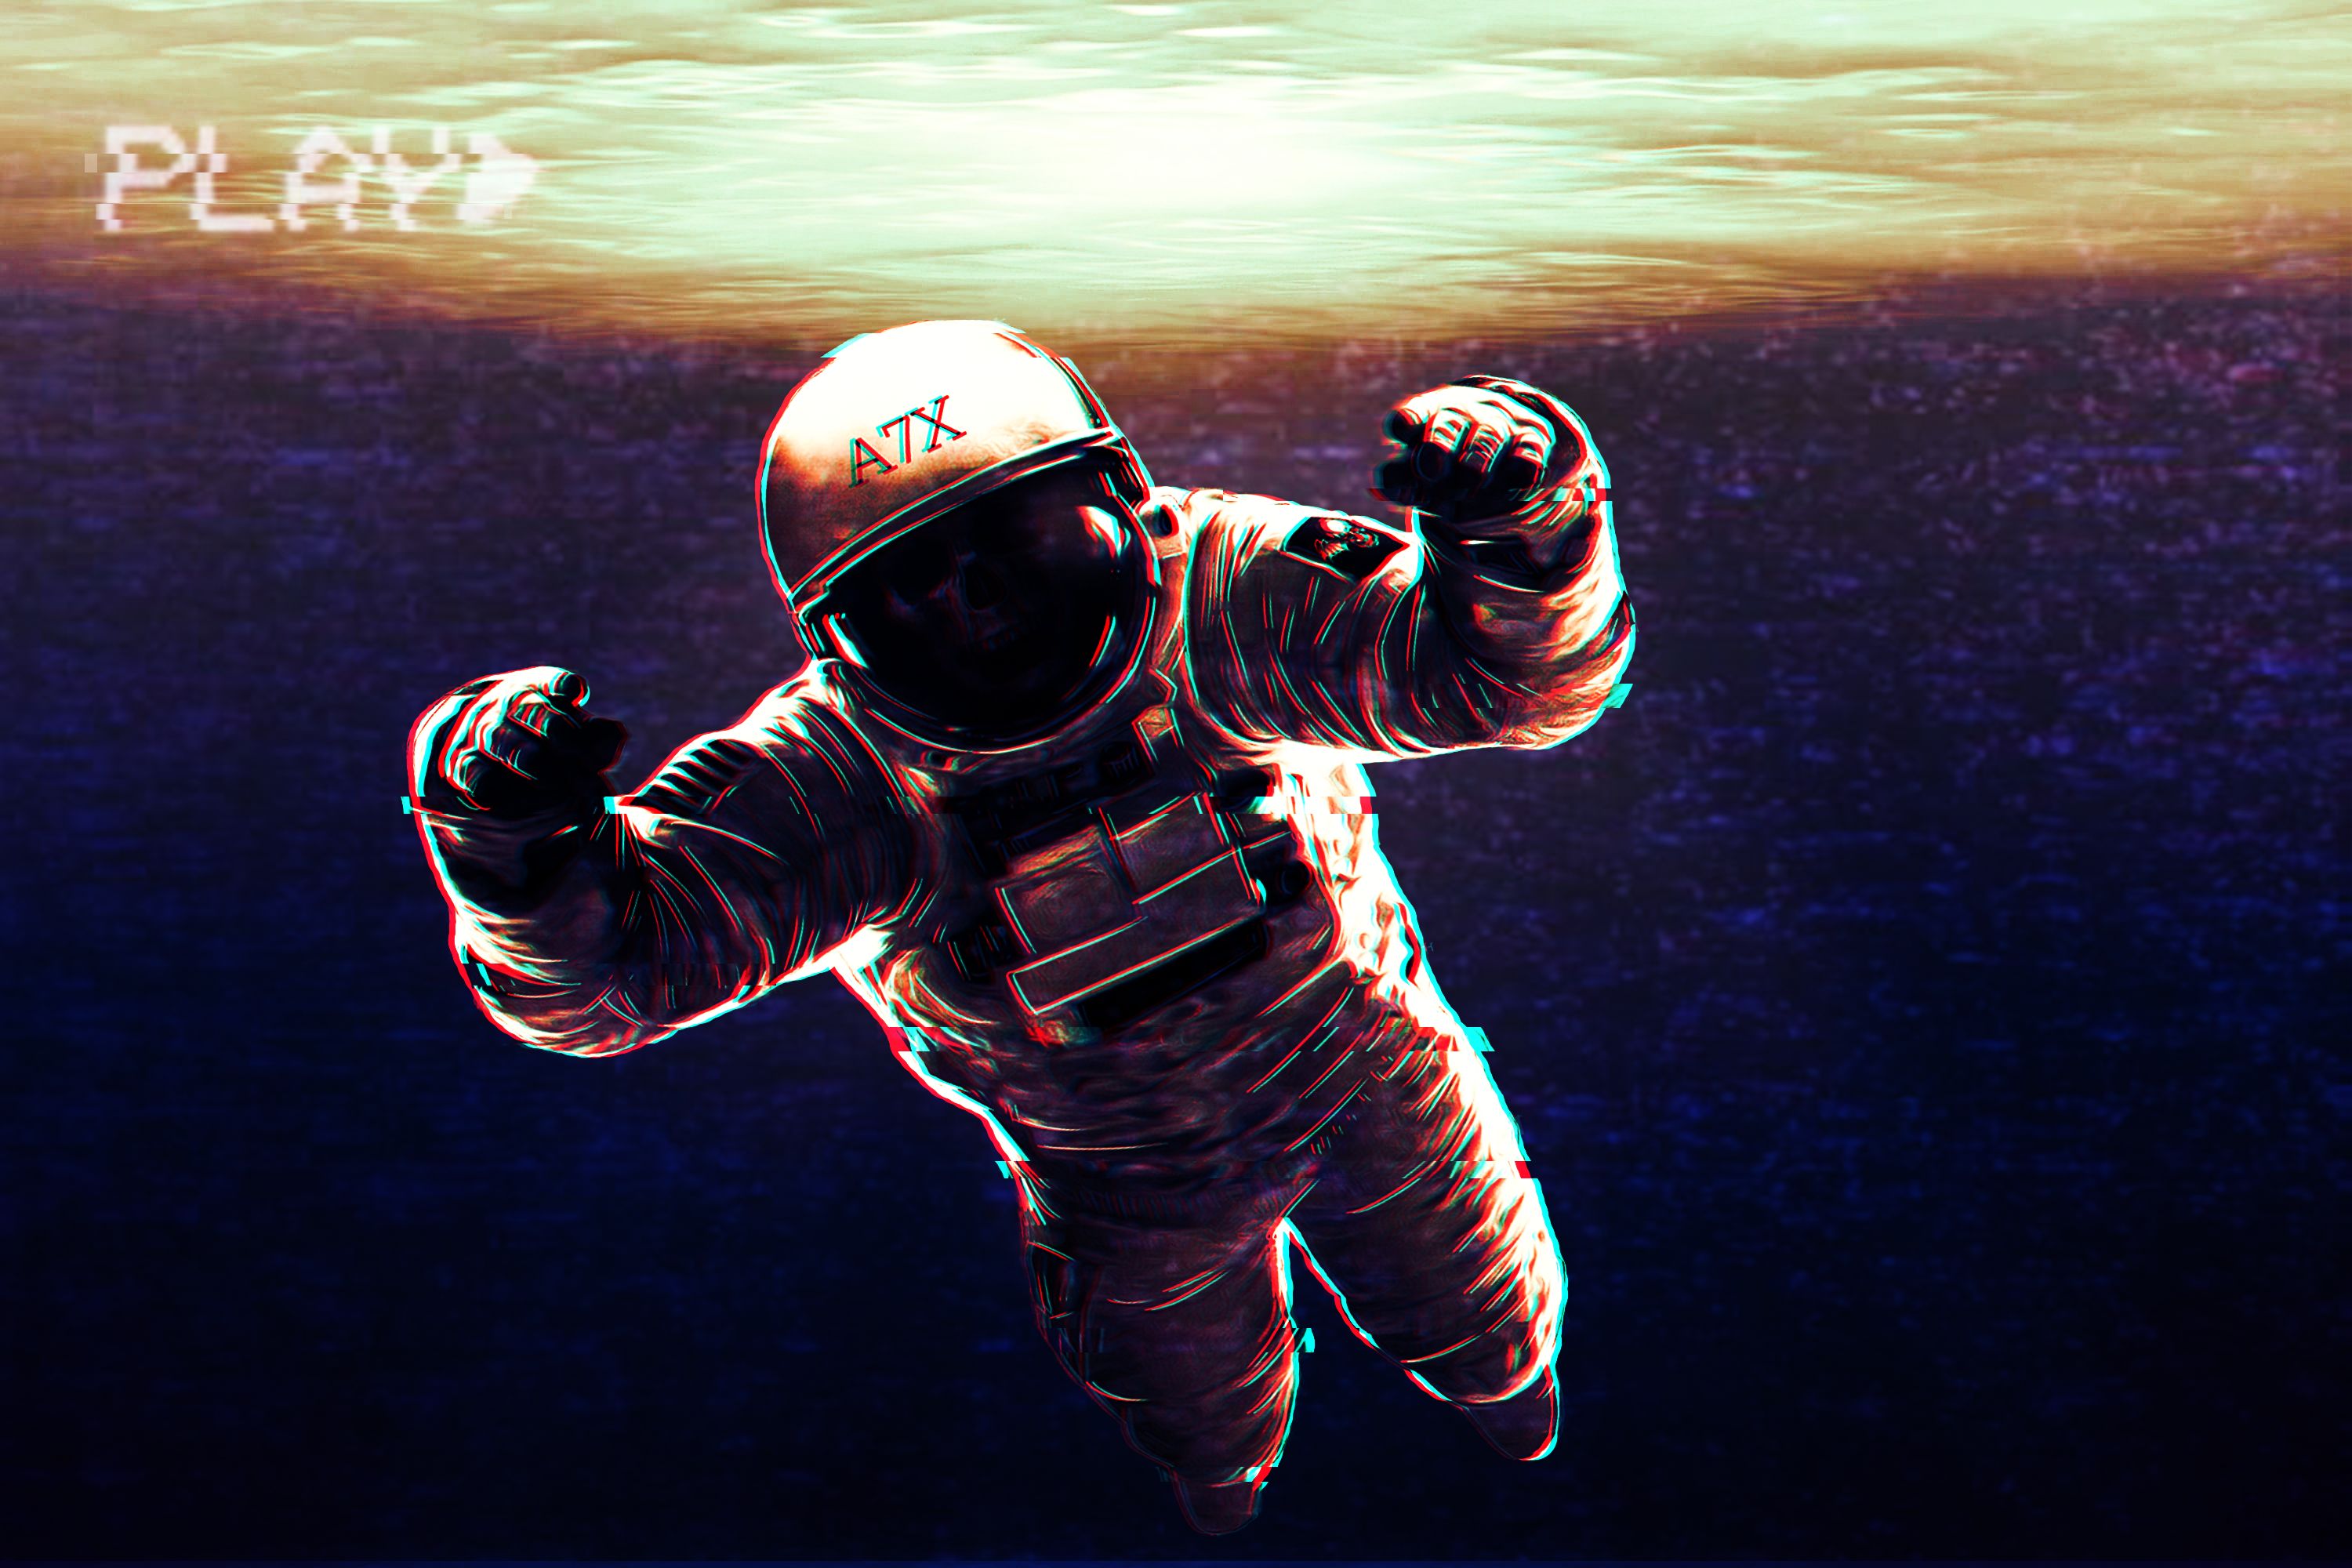 Космонавт в космосе